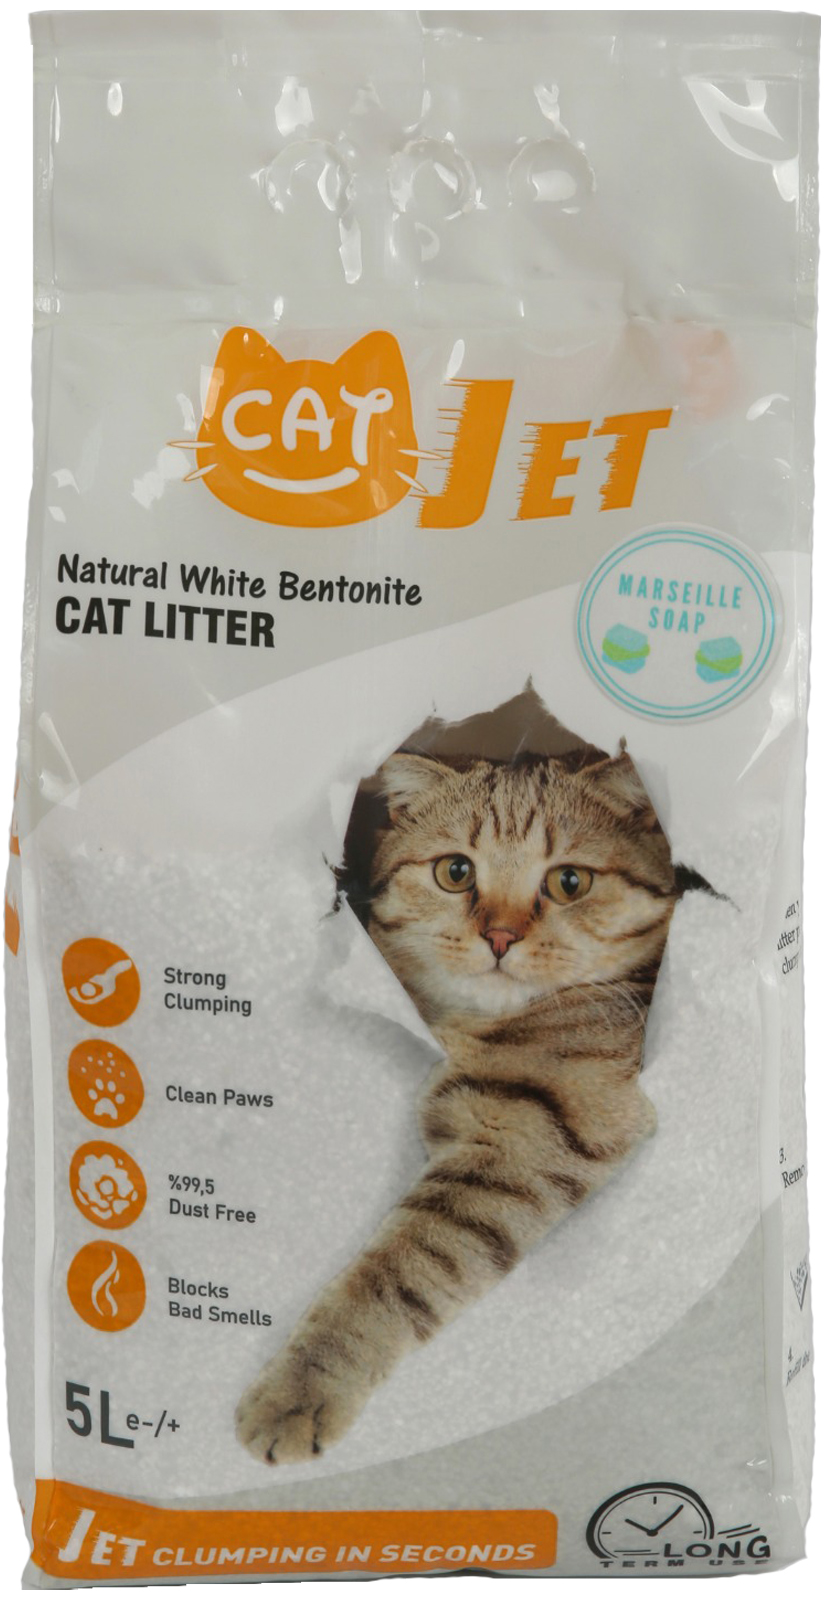 Наполнитель комкующийся CatJet для кошек, белый бентонит 0,60-2,38 мм 5 литров, Аромат марсельского мыла